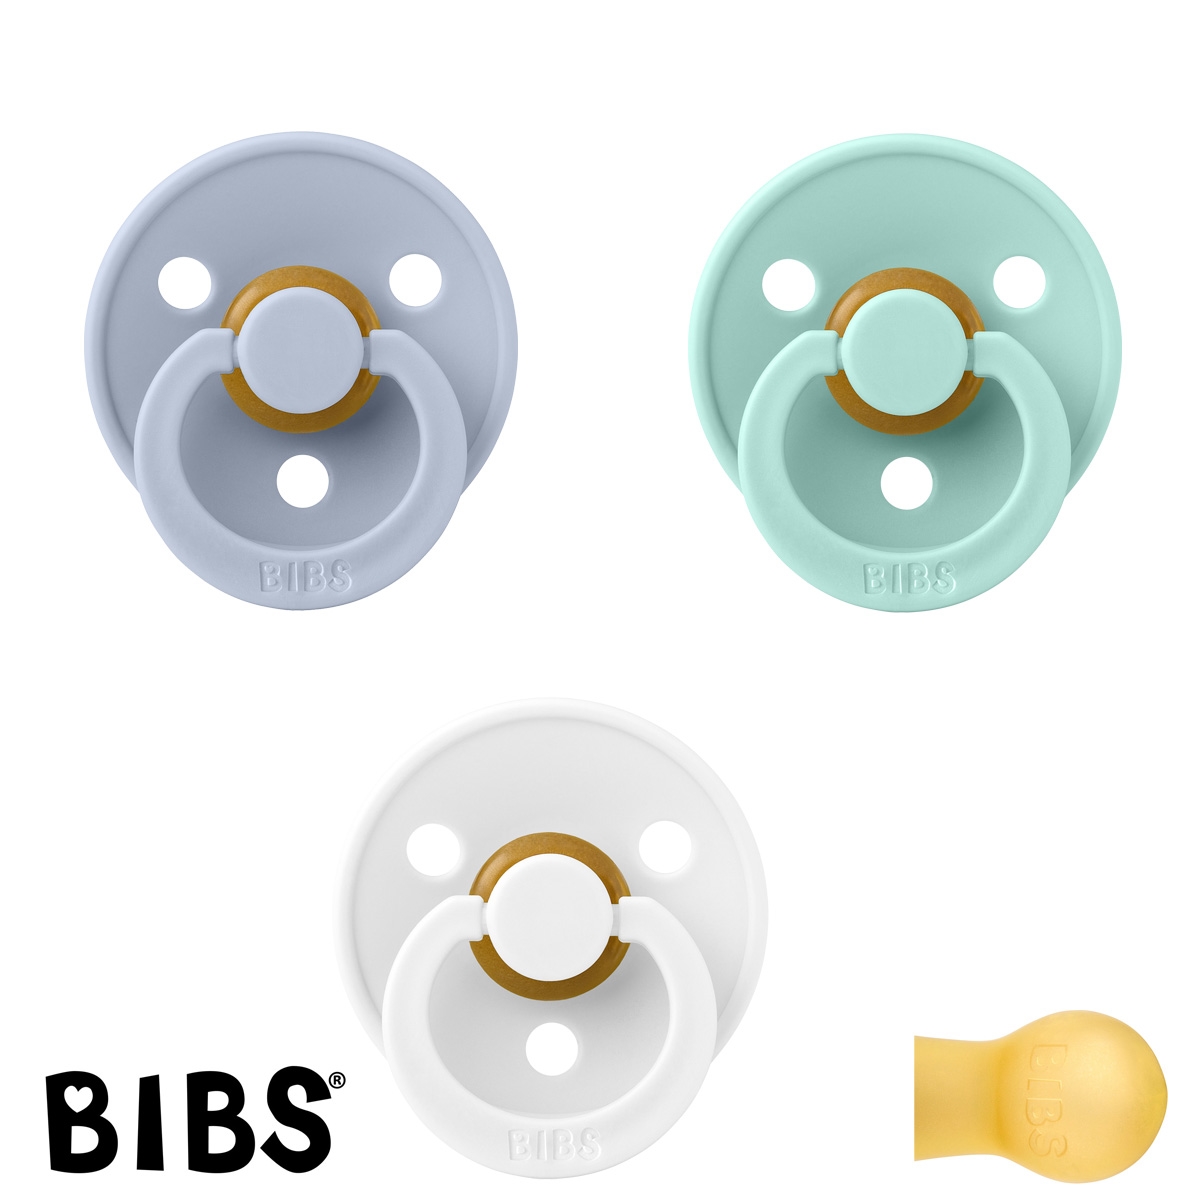 BIBS Colour Schnuller mit Namen, Gr. 2, Dusty Blue, White, Mint, Rund Latex, (3er Pack)